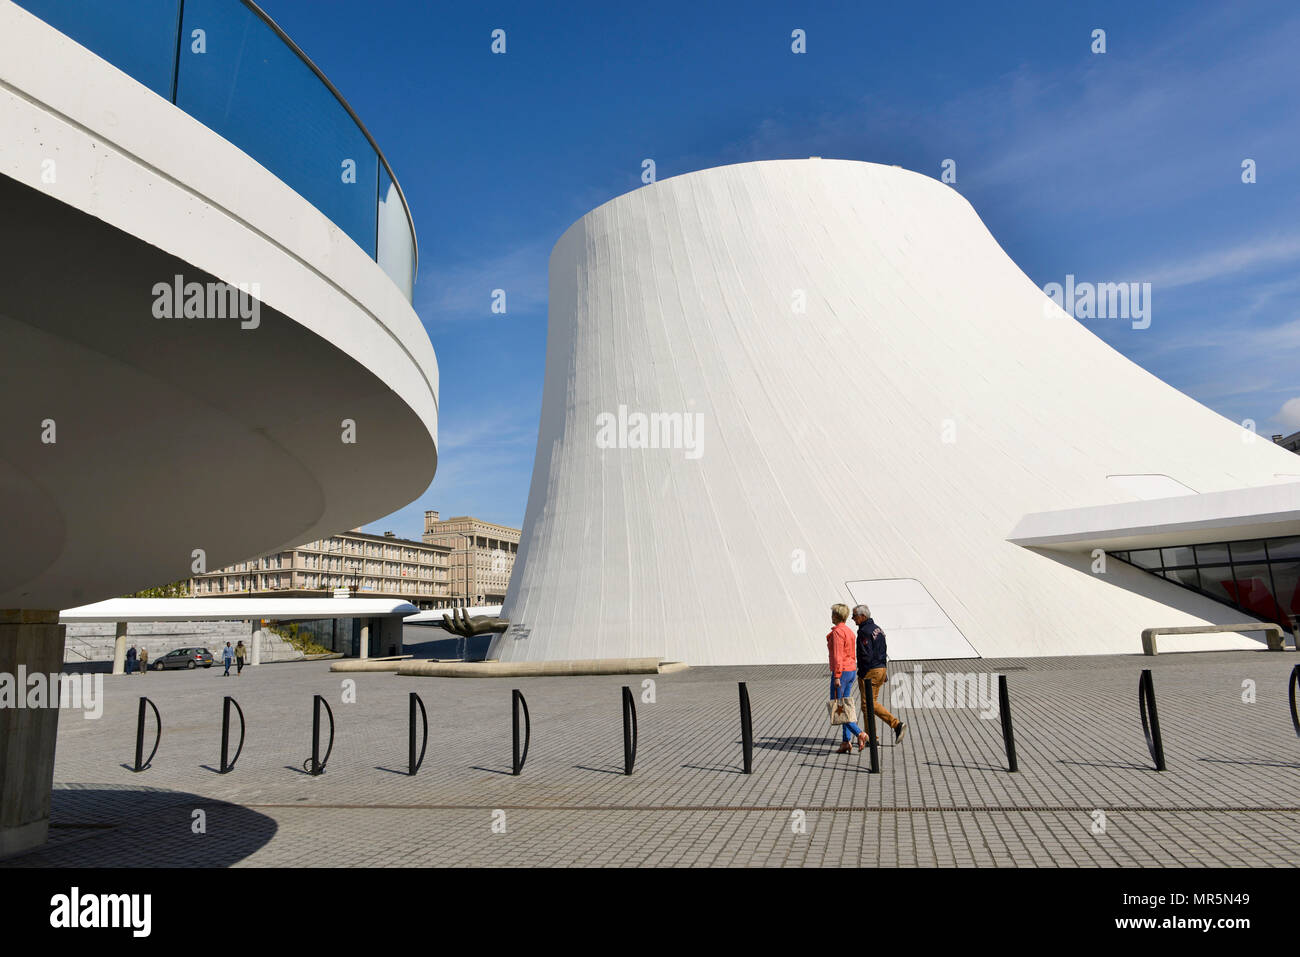 Le Havre (Normandie, nord ouest de la France) : bâtiment appelé "Le Volcan" (Le volcan), par l'architecte Oscar Niemeyer Banque D'Images